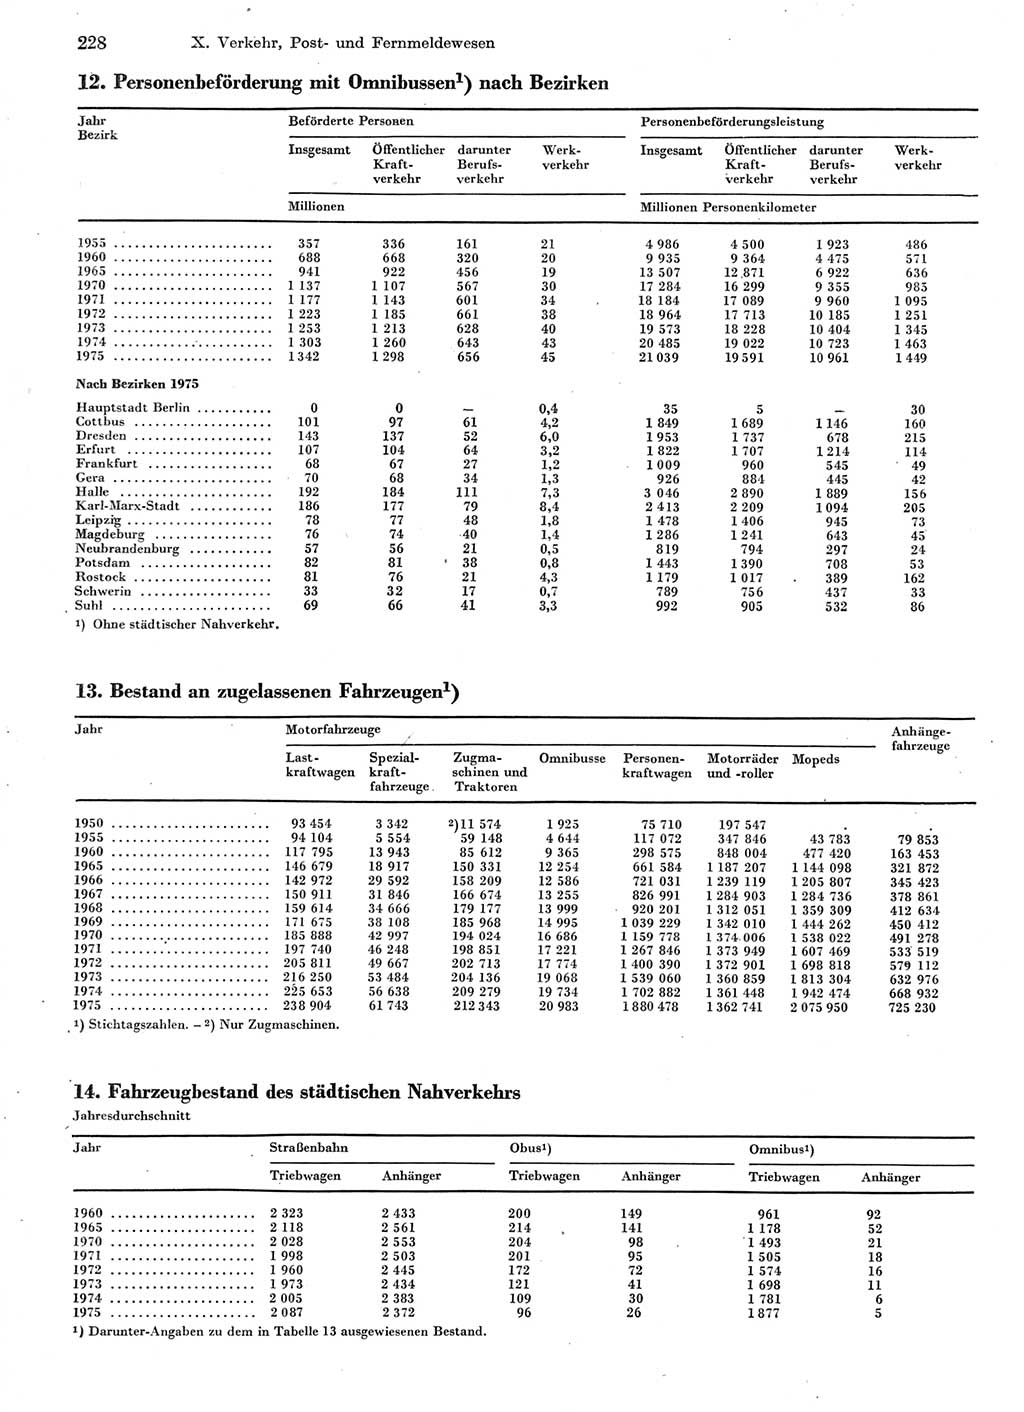 Statistisches Jahrbuch der Deutschen Demokratischen Republik (DDR) 1976, Seite 228 (Stat. Jb. DDR 1976, S. 228)